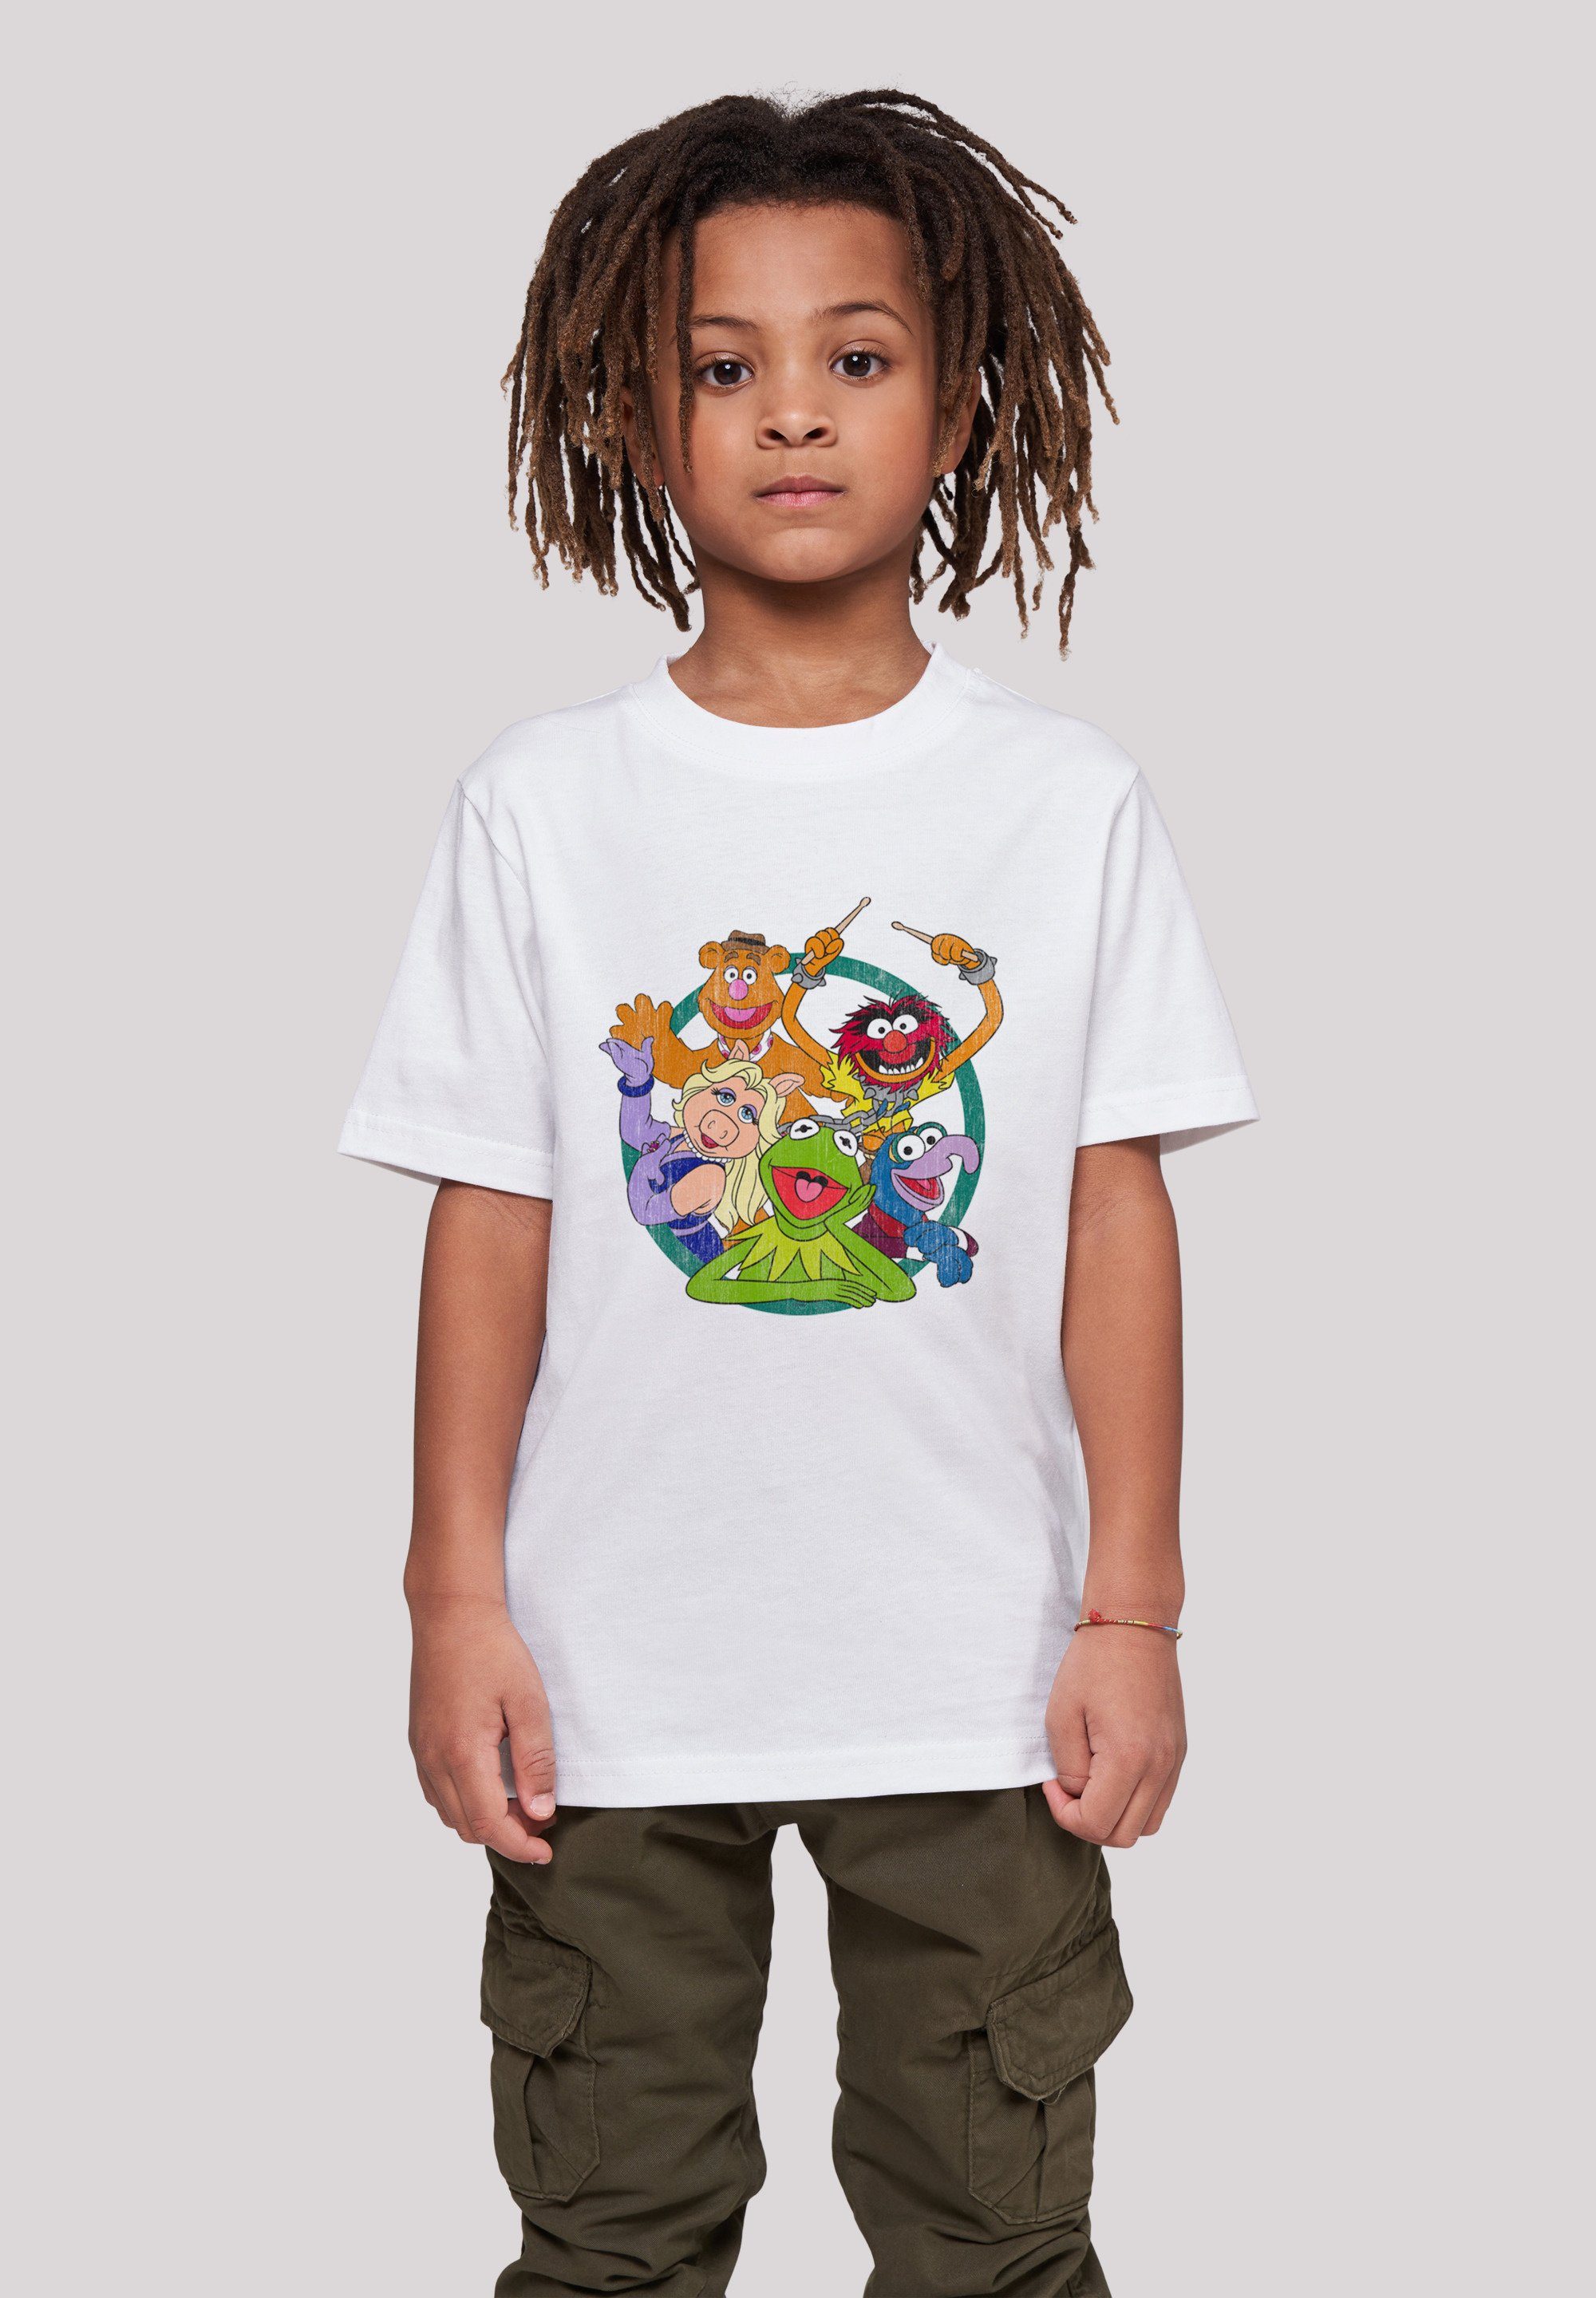 Die Muppets T-Shirt hohem Group F4NT4STIC Tragekomfort Sehr Disney Baumwollstoff mit weicher Print, Circle